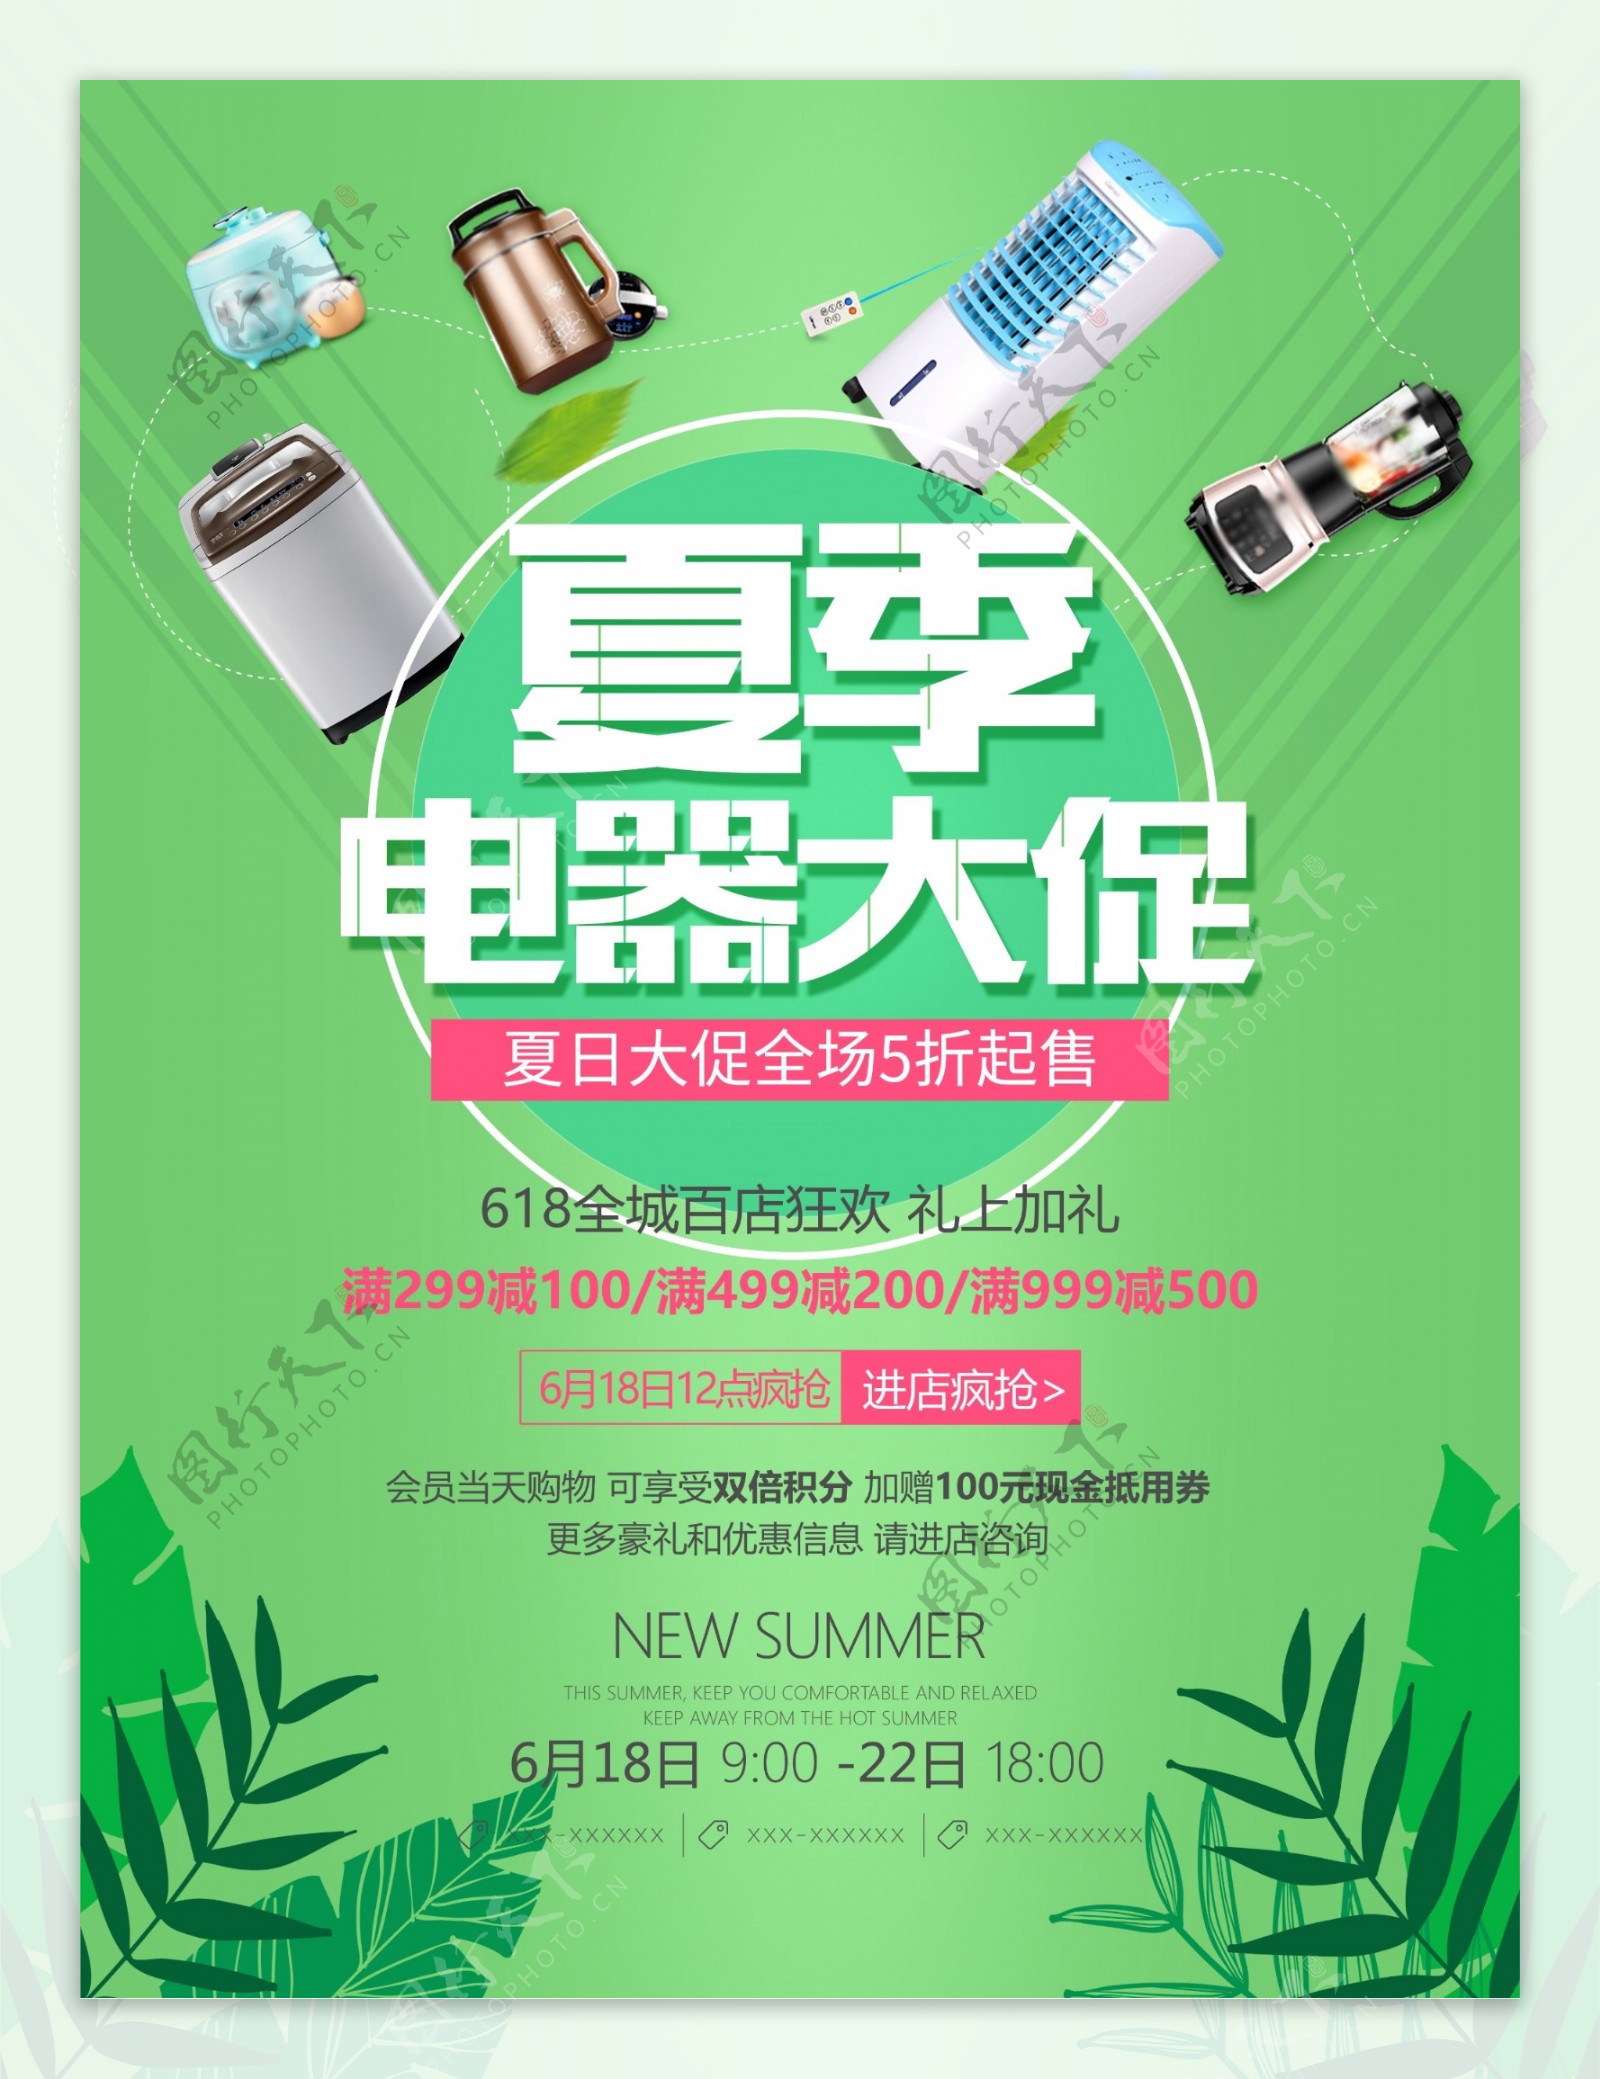 绿色清新夏季电器大促活动宣传海报